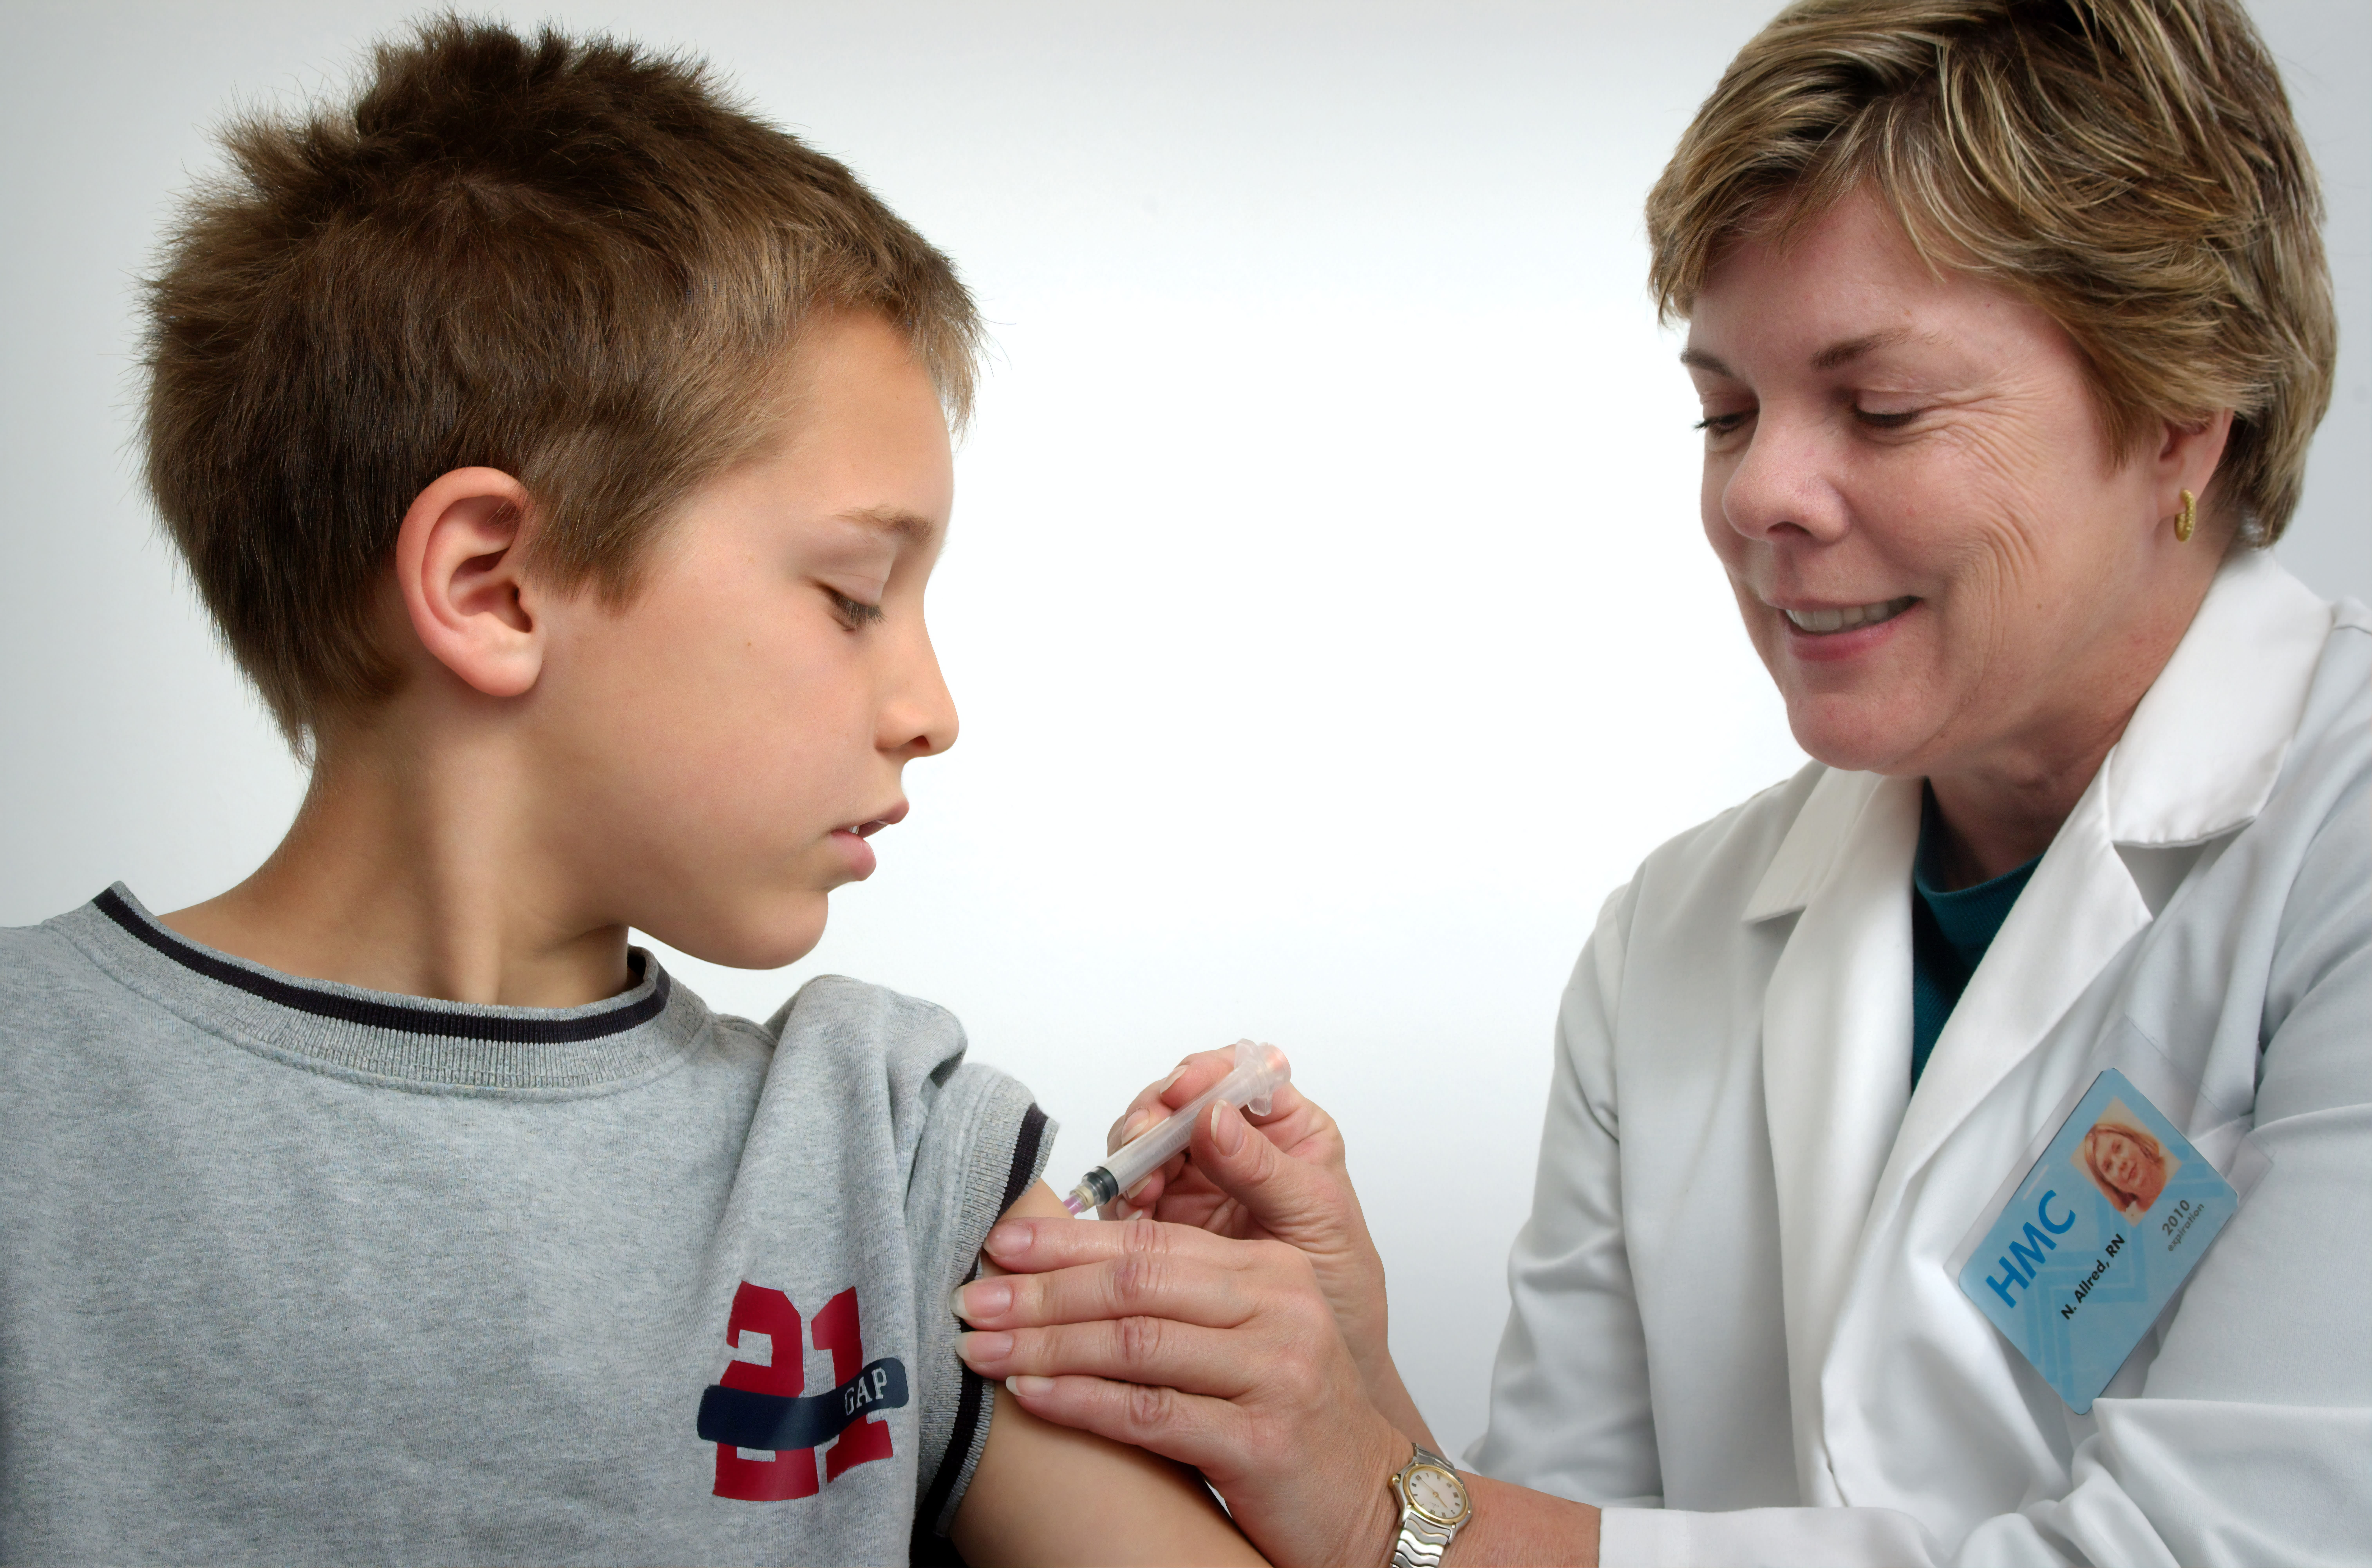 L'infirmière représentée sur cette photographie de 2006 était en train d'administrer un vaccin intramusculaire à l'épaule gauche d'un jeune garçon.L'infirmière pinçait la peau de l'épaule sus-jacente afin d'immobiliser le site d'injection.